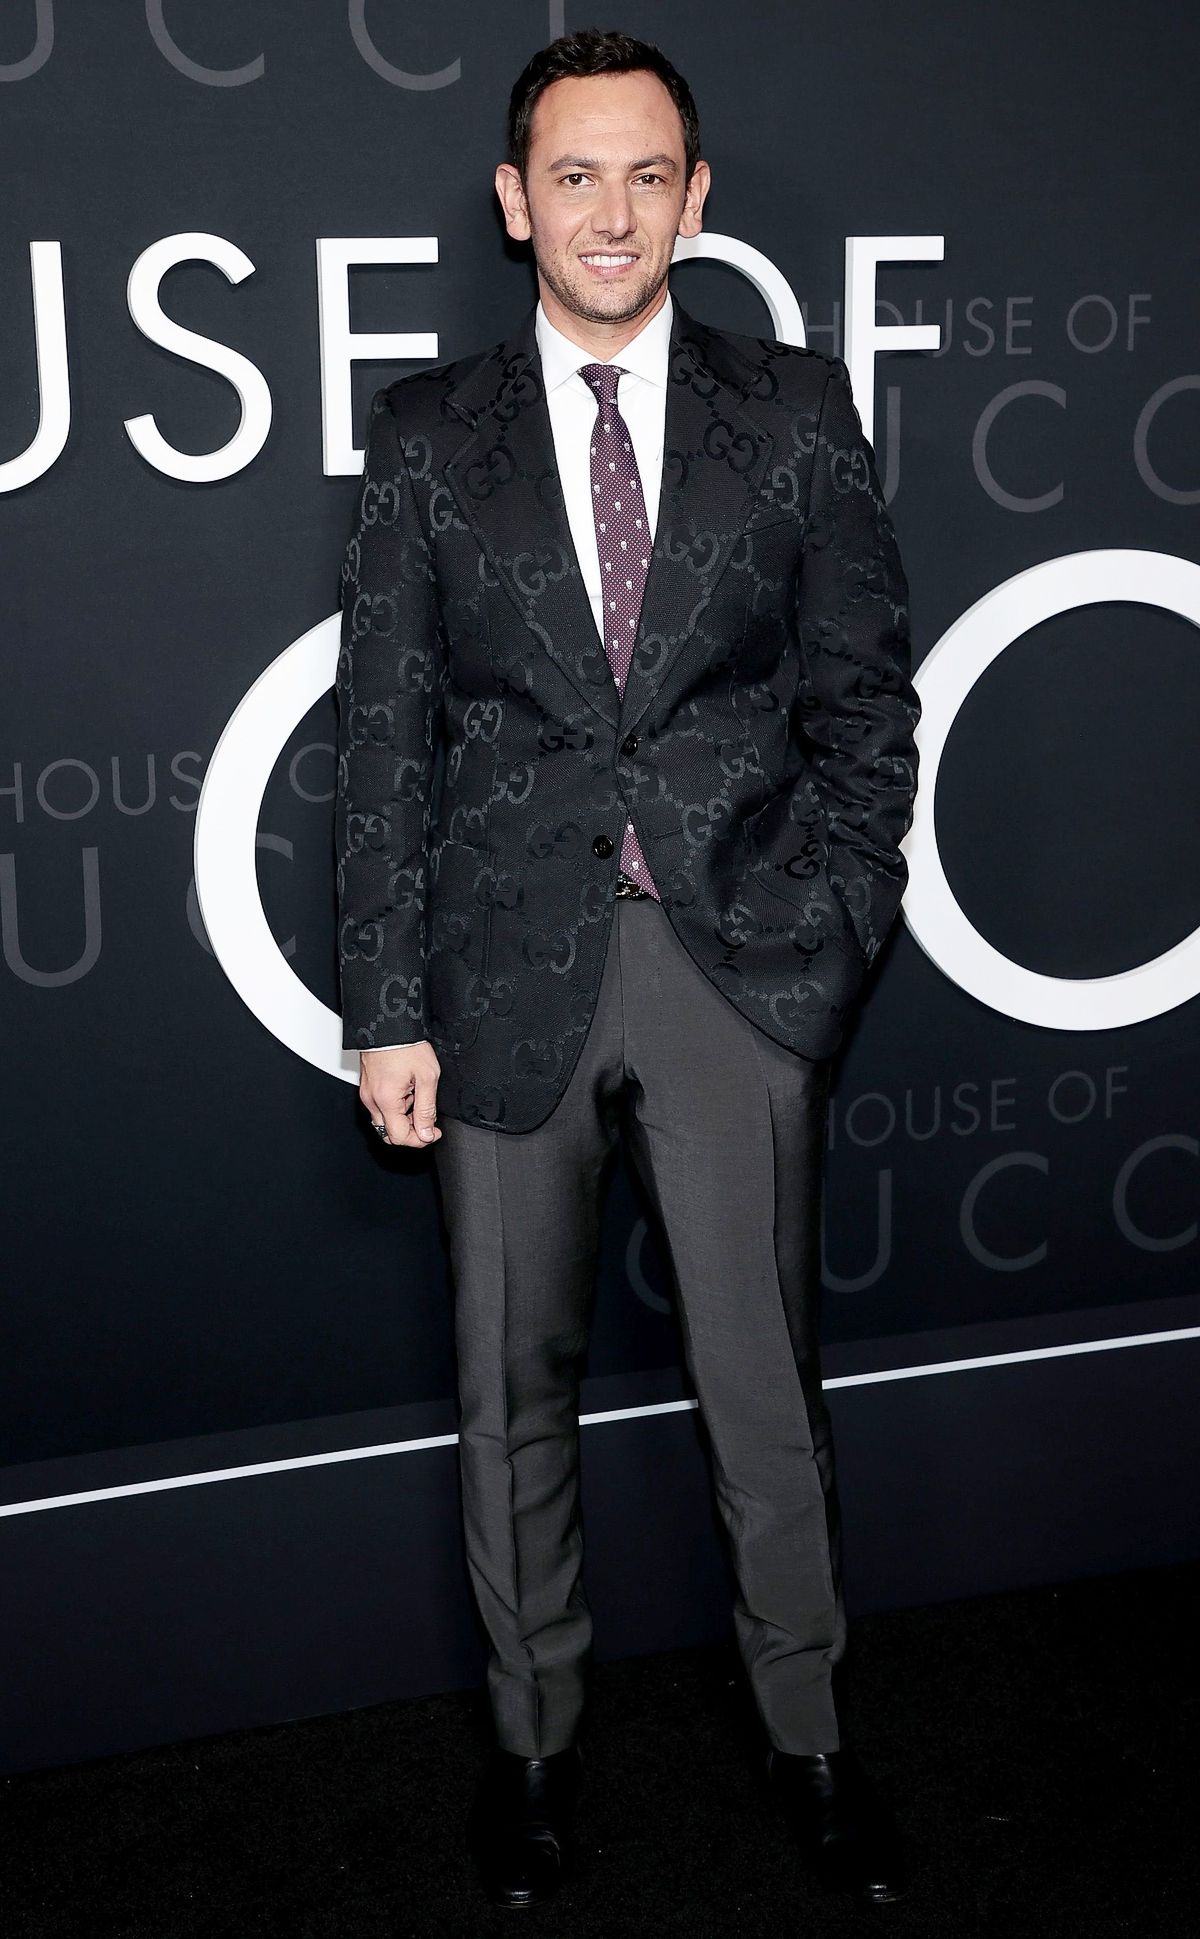 Роберто Бентивенья на нью-йоркской премьере фильма «Дом Gucci», фото 1